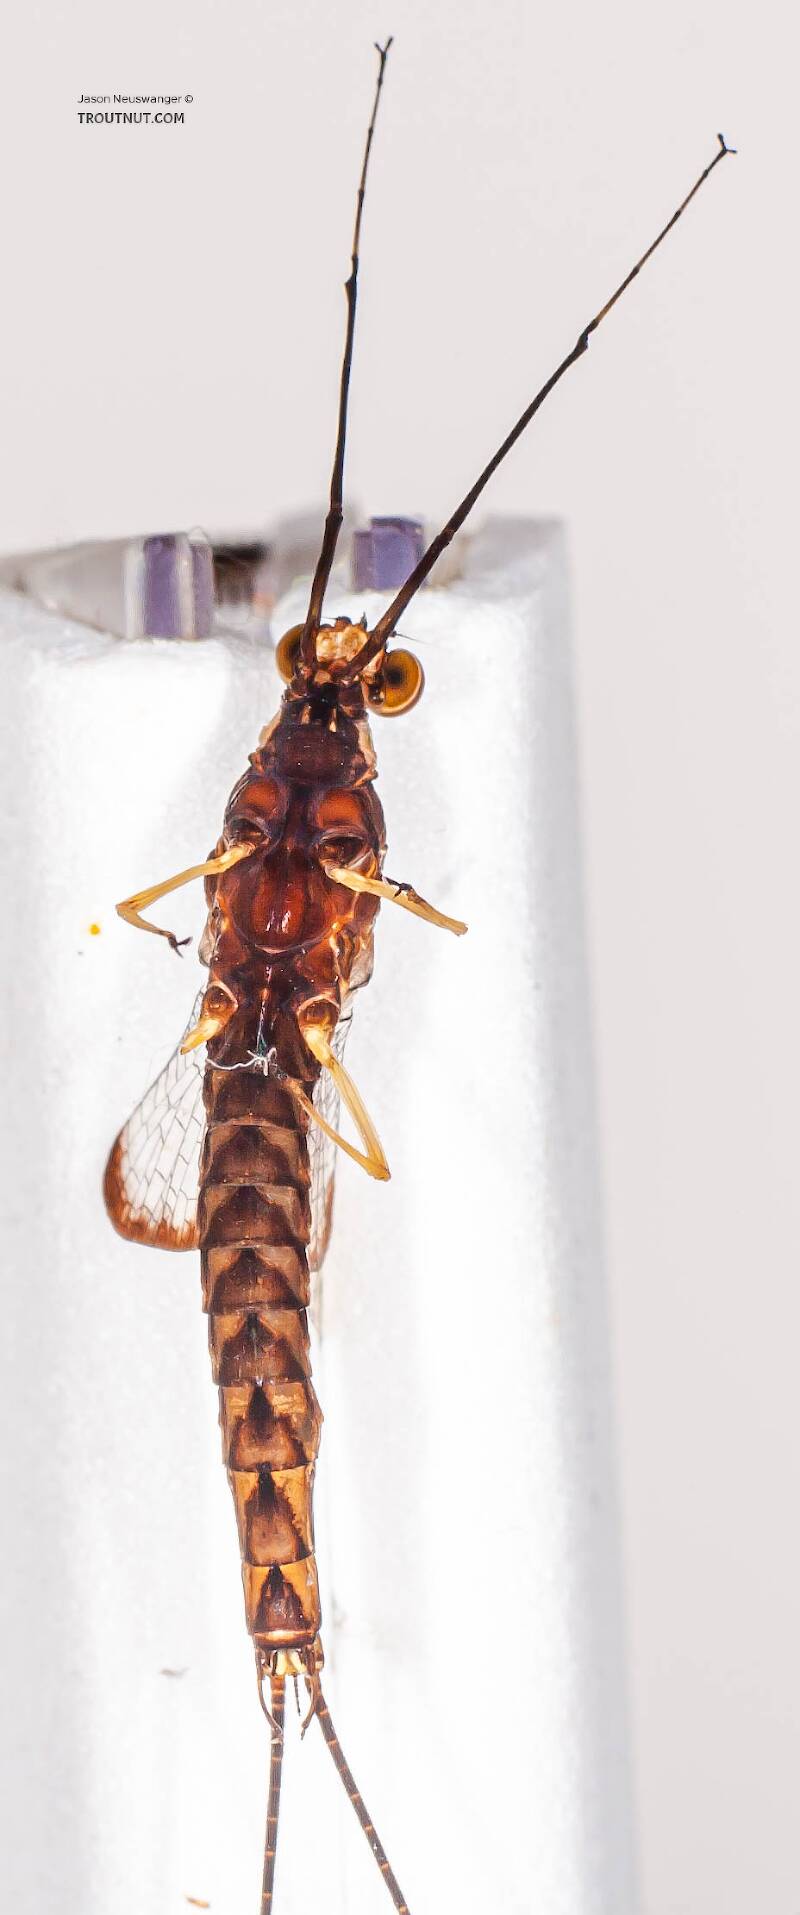 Male Hexagenia atrocaudata (Ephemeridae) (Late Hex) Mayfly Spinner from the Namekagon River in Wisconsin